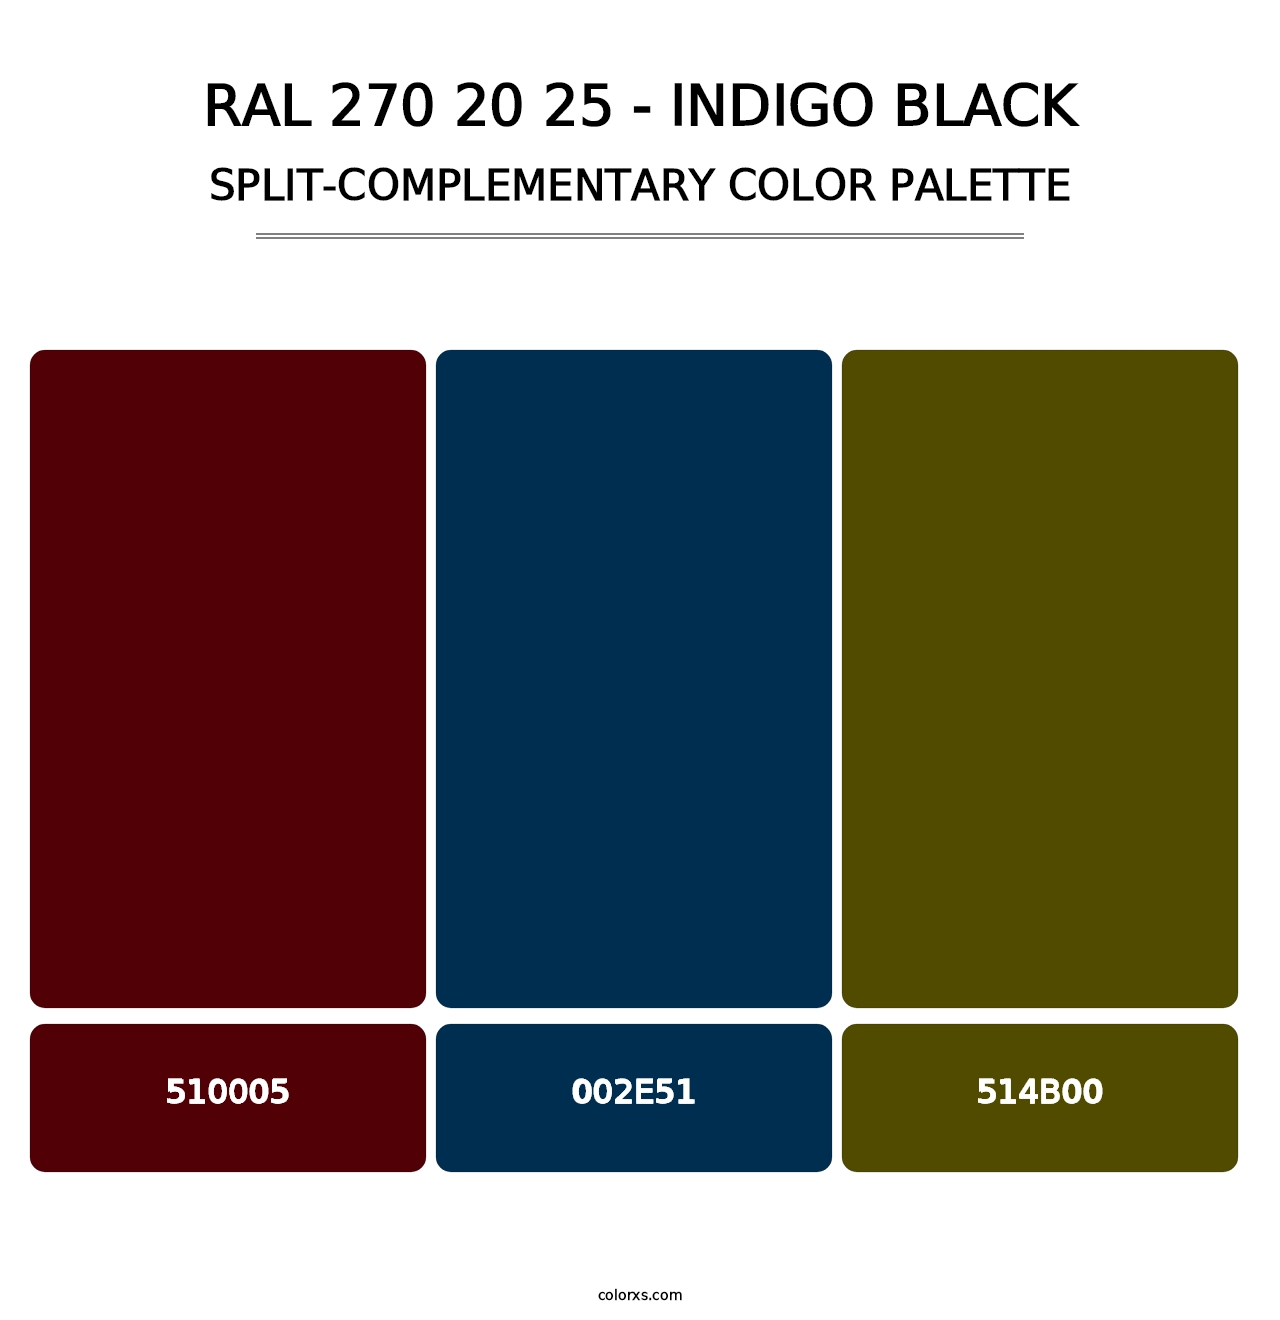 RAL 270 20 25 - Indigo Black - Split-Complementary Color Palette